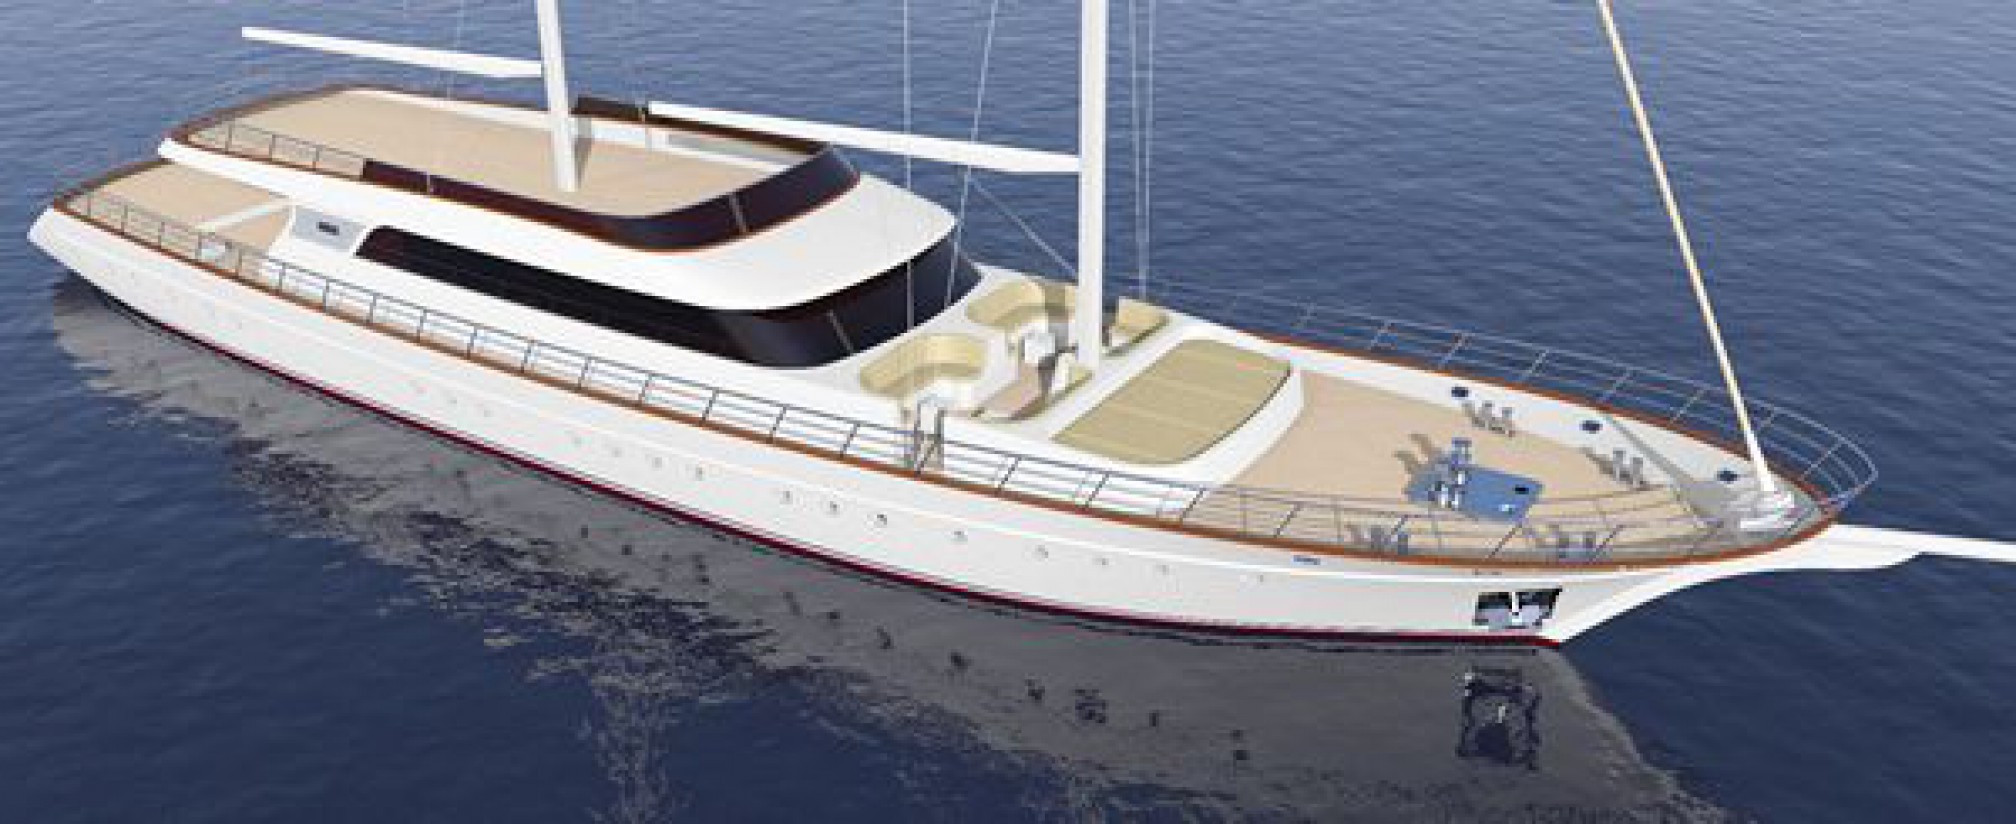 Rental yacht Gita anchored